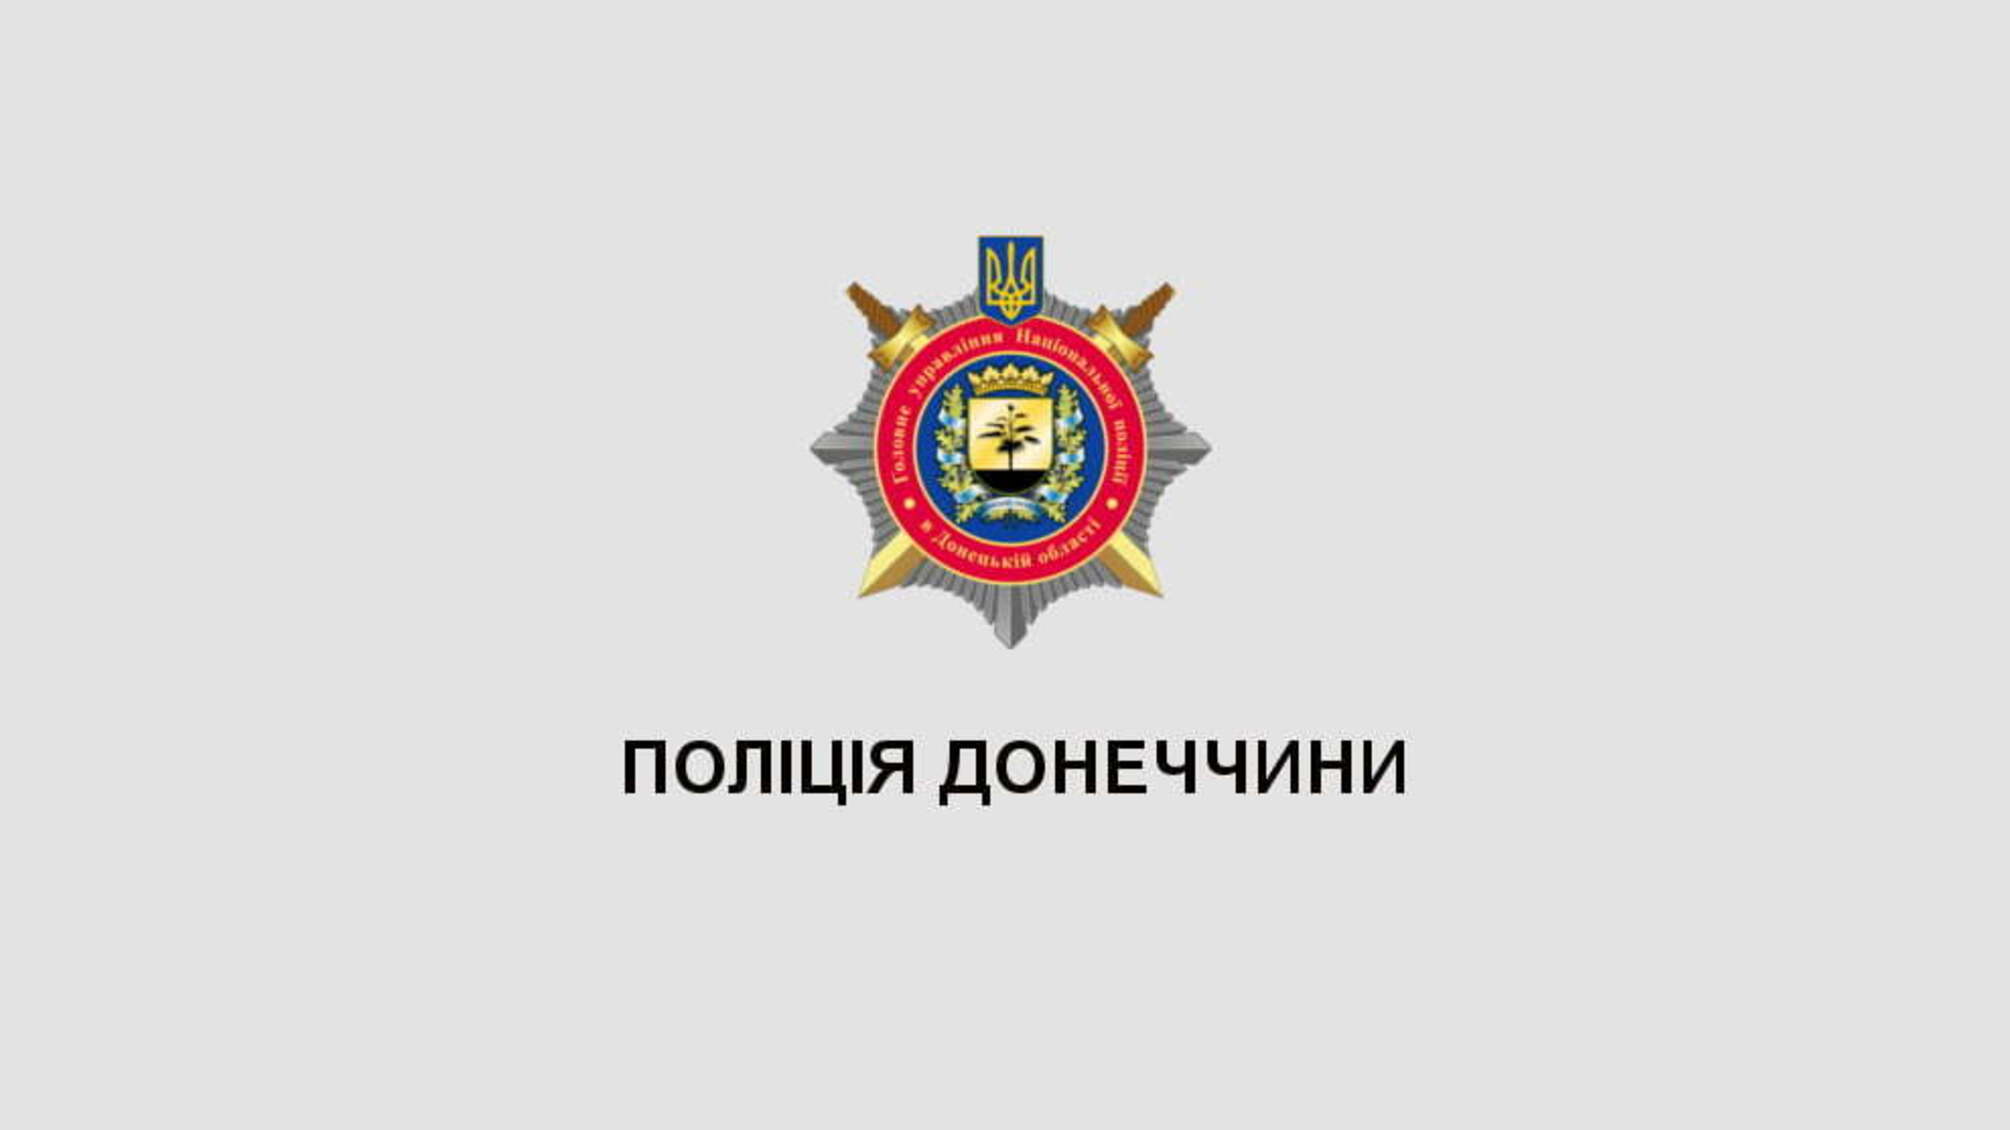 Поліція Донецької області висловлює співчуття родині загиблого поліцейського